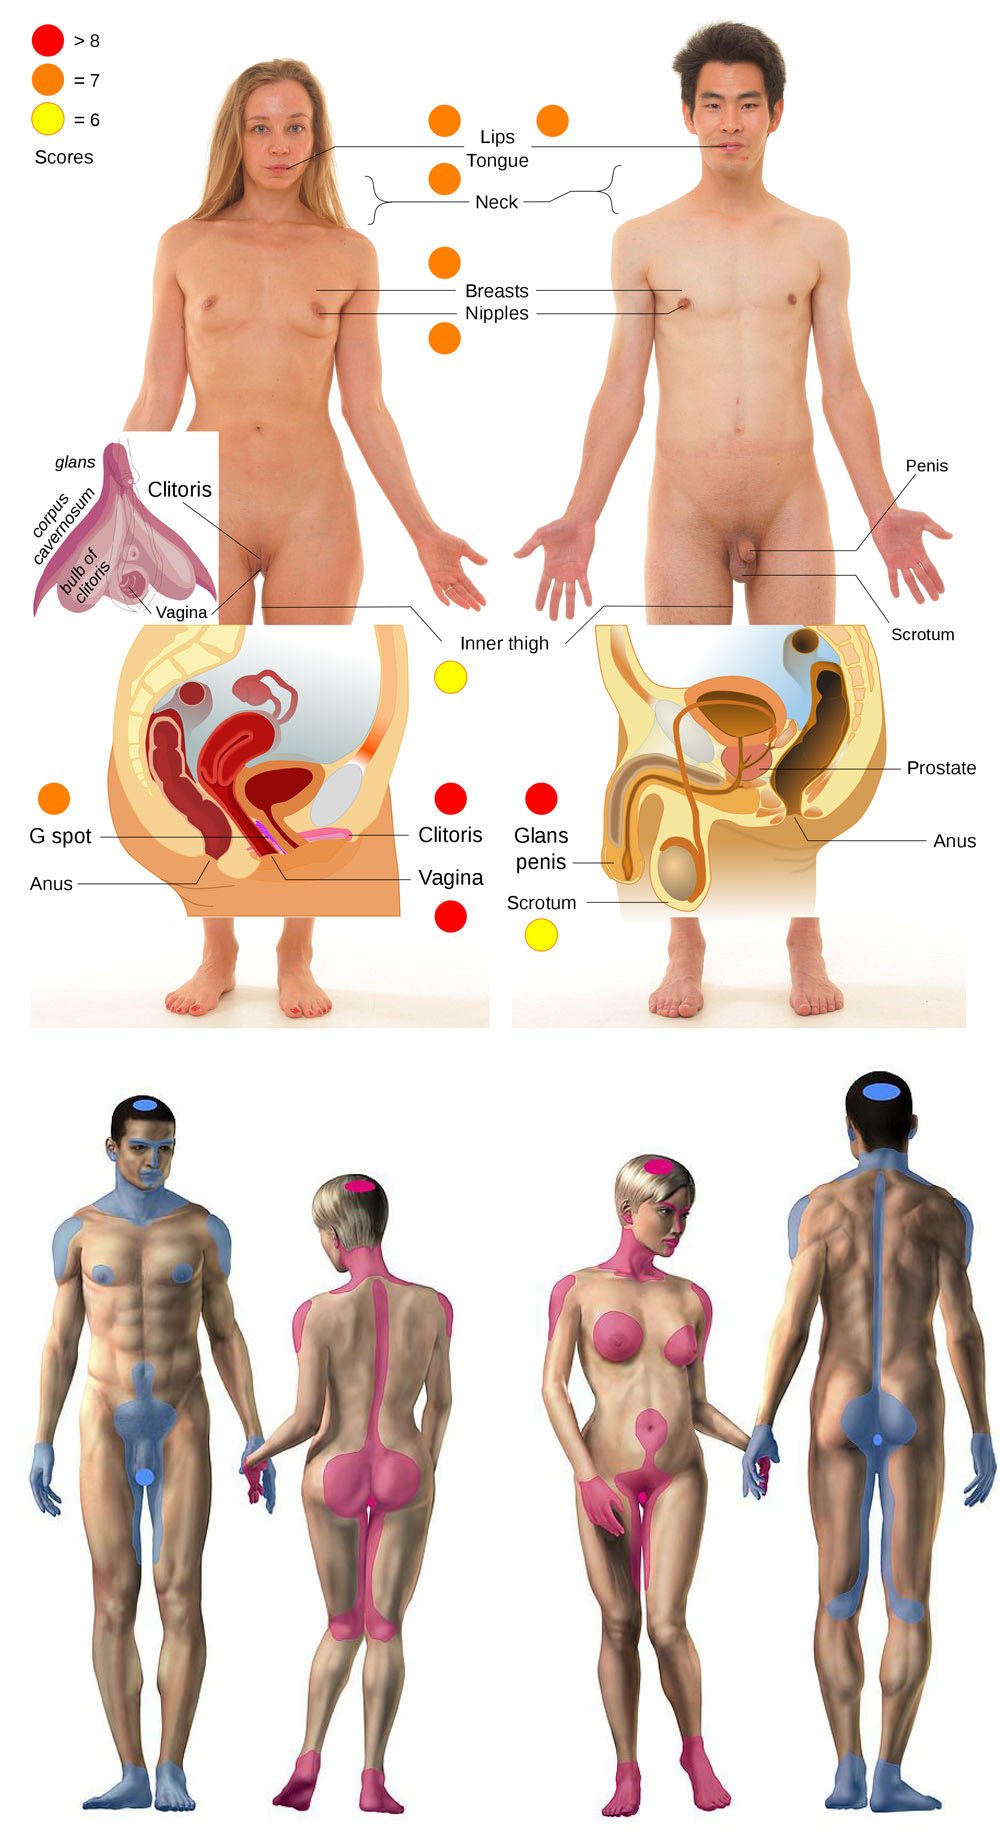 Erogenous zones in men and women